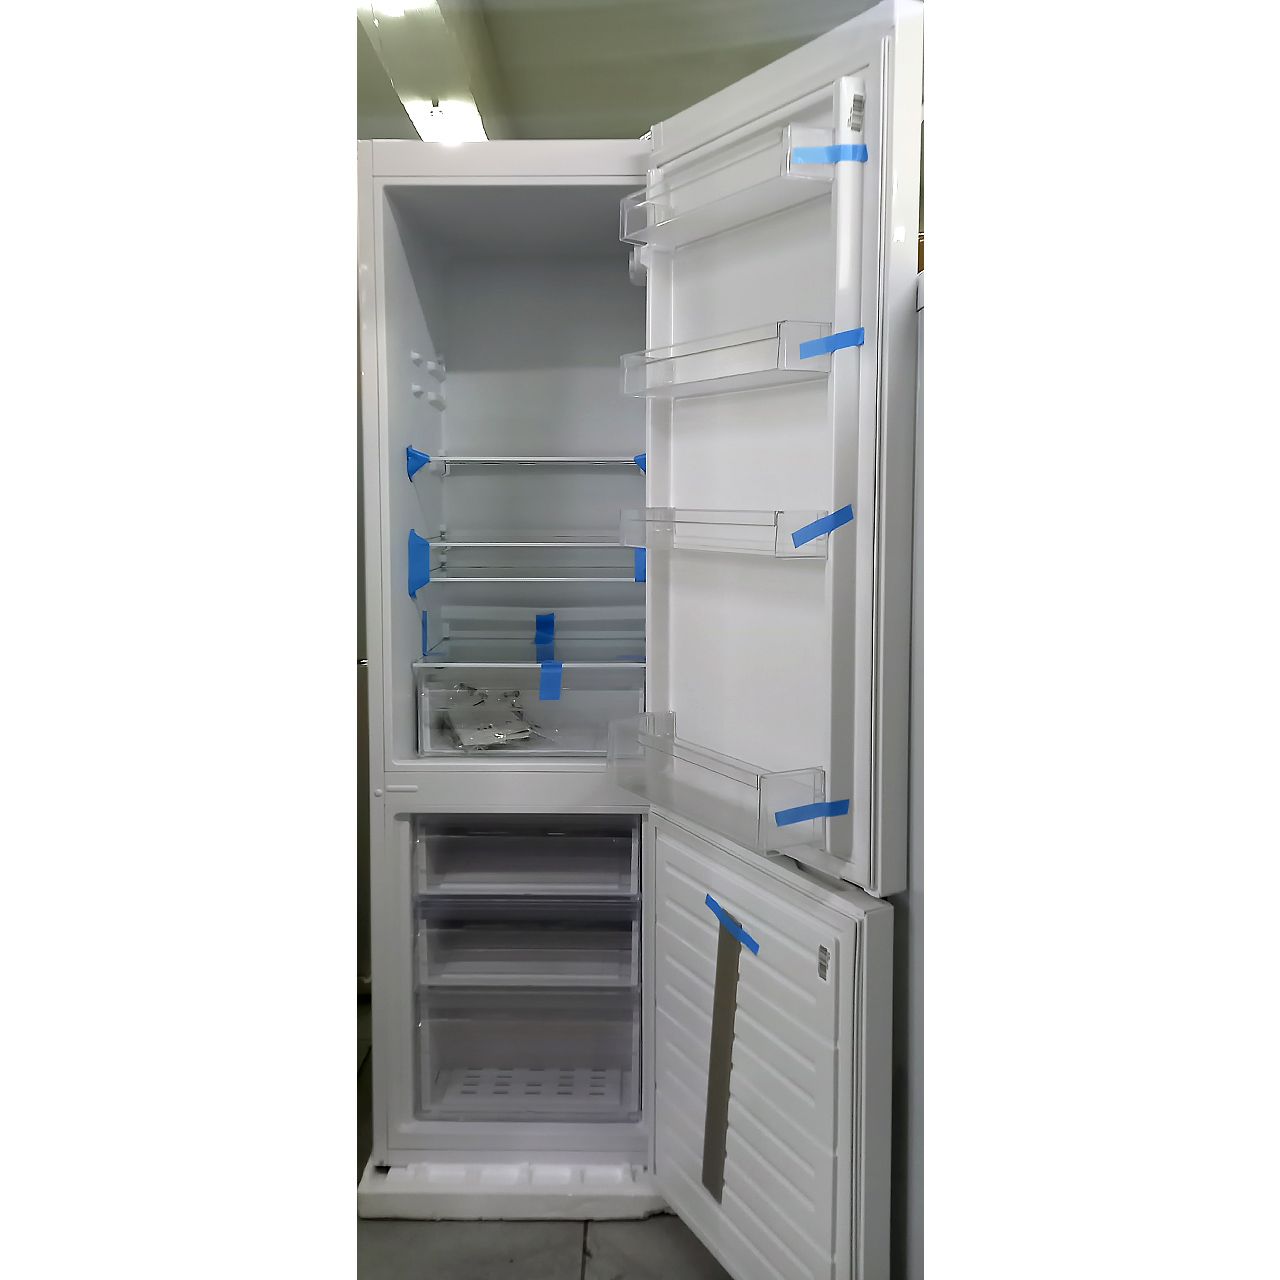 Холодильник двухкамерный Vestel 286 литров